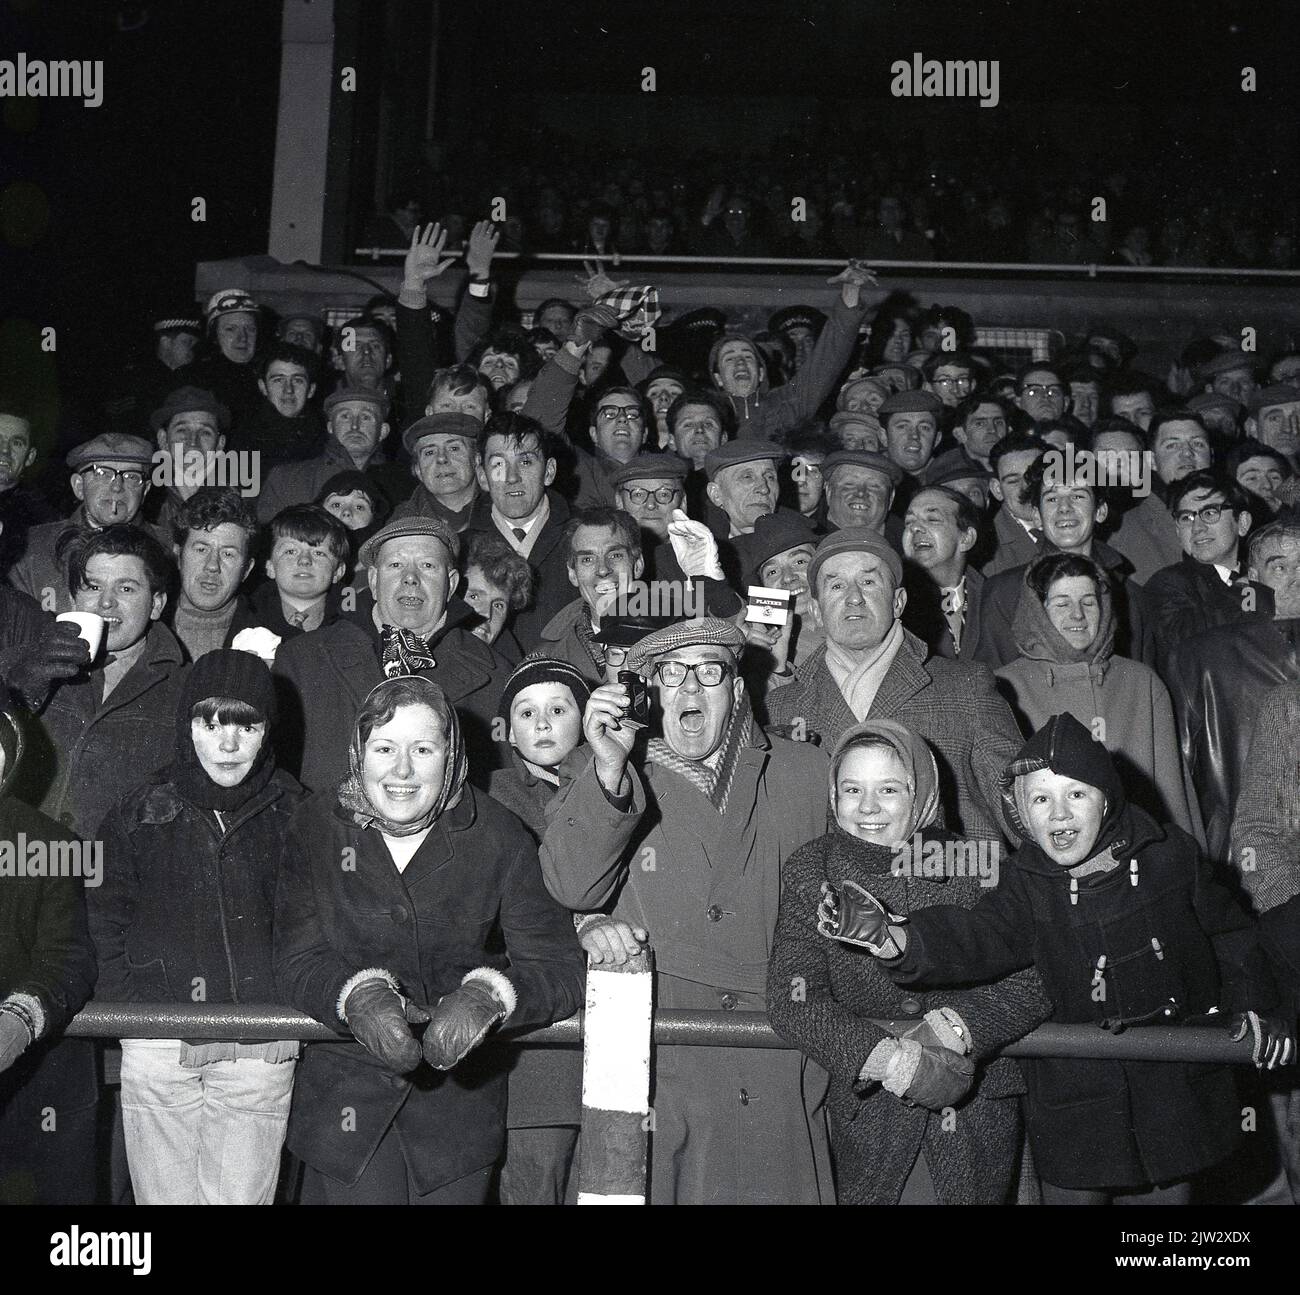 1960s, des fans de football historiques se tenant ensemble sur une terrasse traditionnelle pour regarder un match, lors d'un match en soirée... manteaux, casquettes plates pour hommes, manteaux de sport et chapeaux de galet pour les jeunes, l'époque avant les répliques de chemises! Banque D'Images